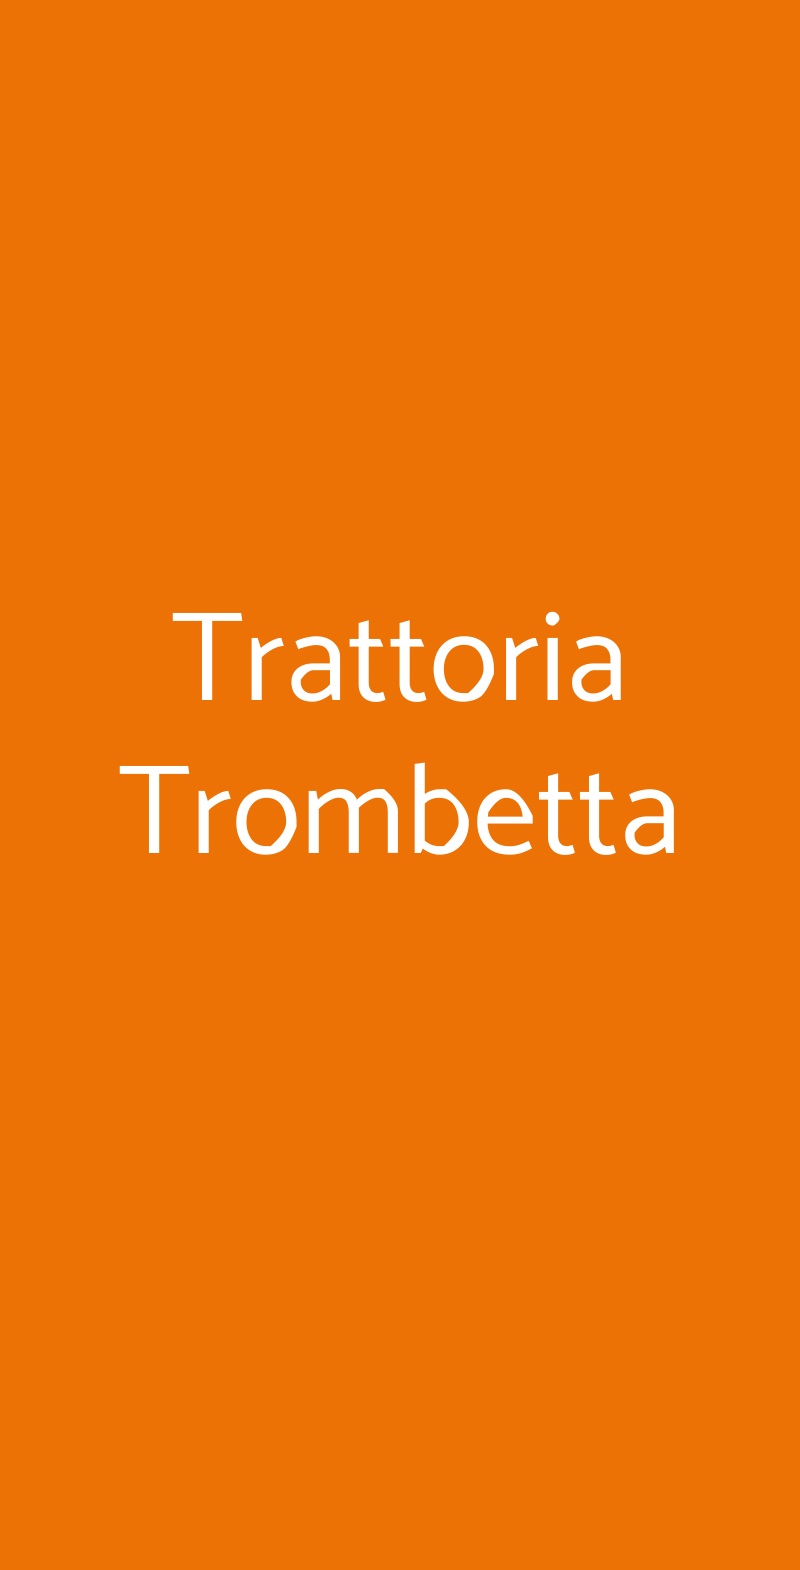 Trattoria Trombetta Milano menù 1 pagina